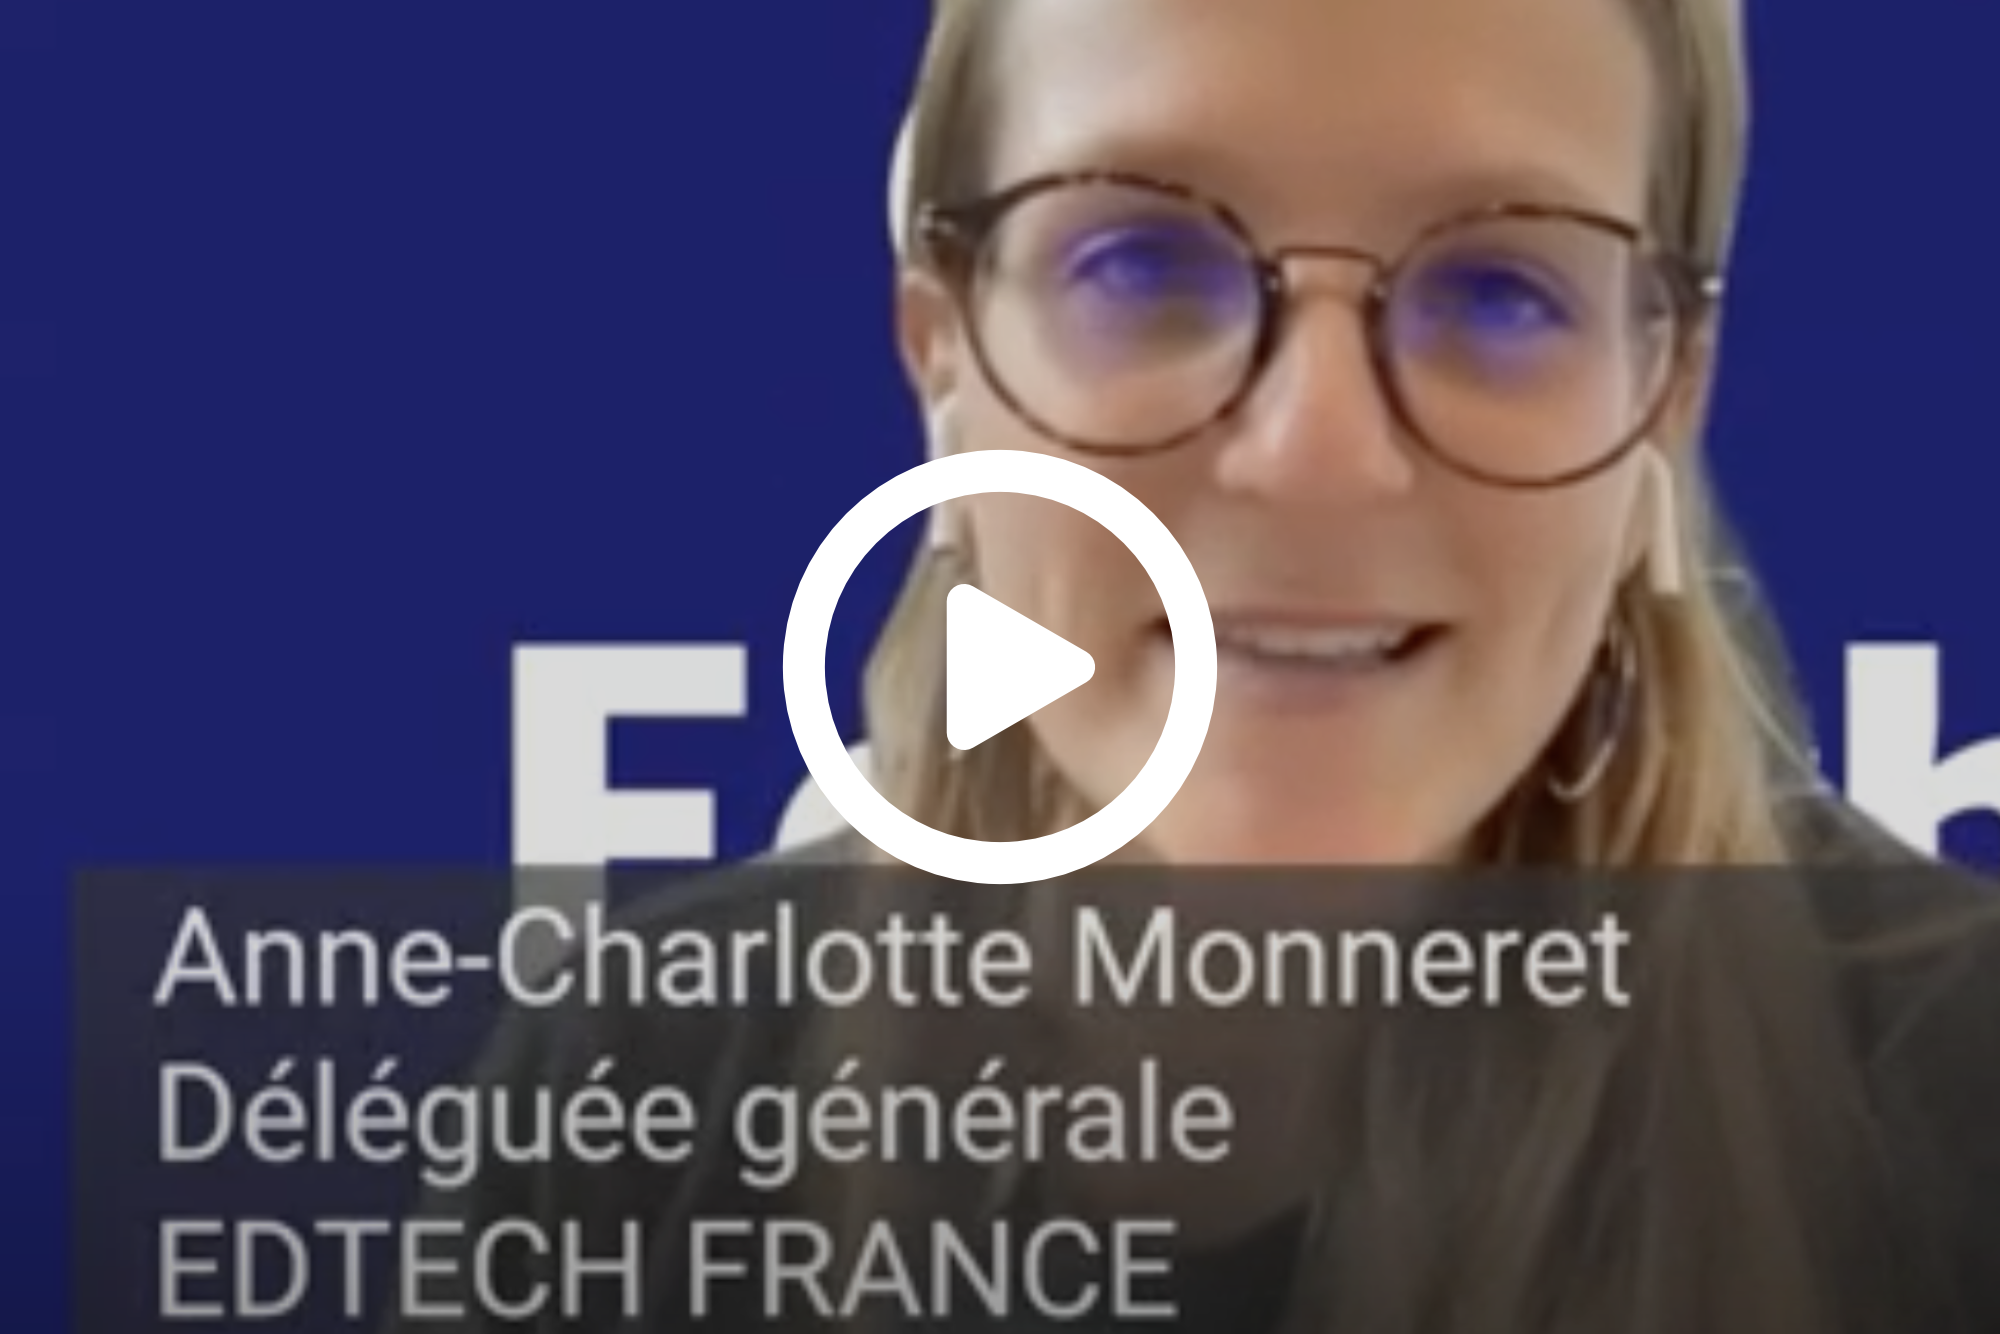 Bouton vidéo d'accès la vidéo de présentation des objectifs 2021 d'EdTech France par Anne-Charlotte Monneret, déléguée générale